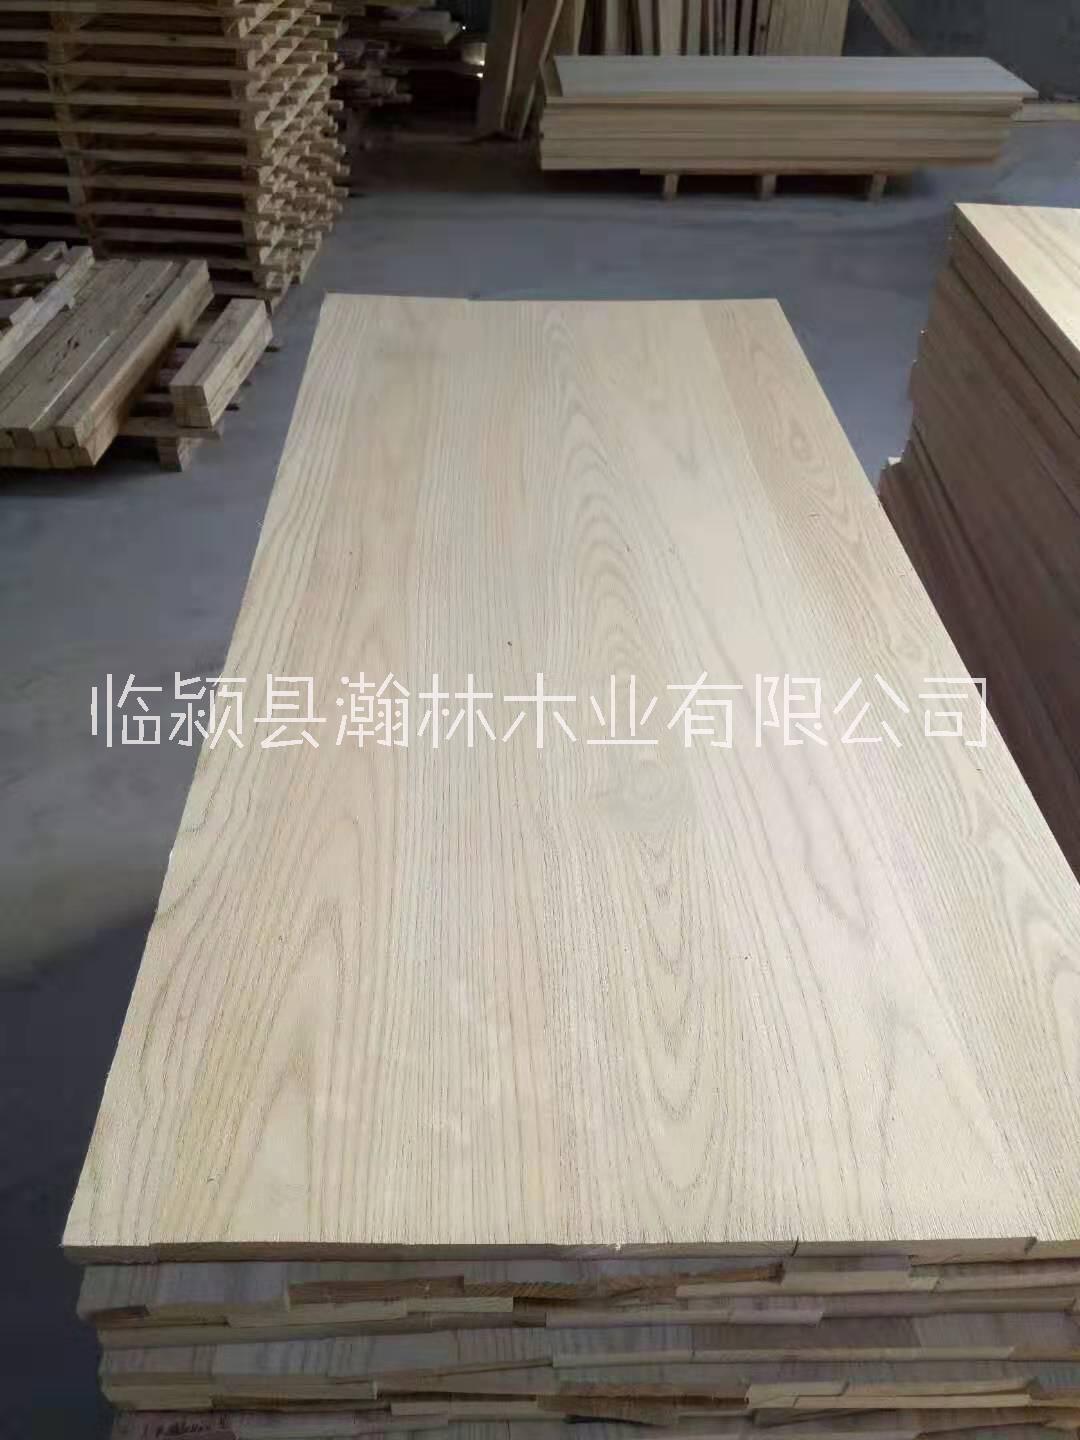 白椿木拼板 白椿木餐桌面板材厂家专业定制加工各种拼板材料